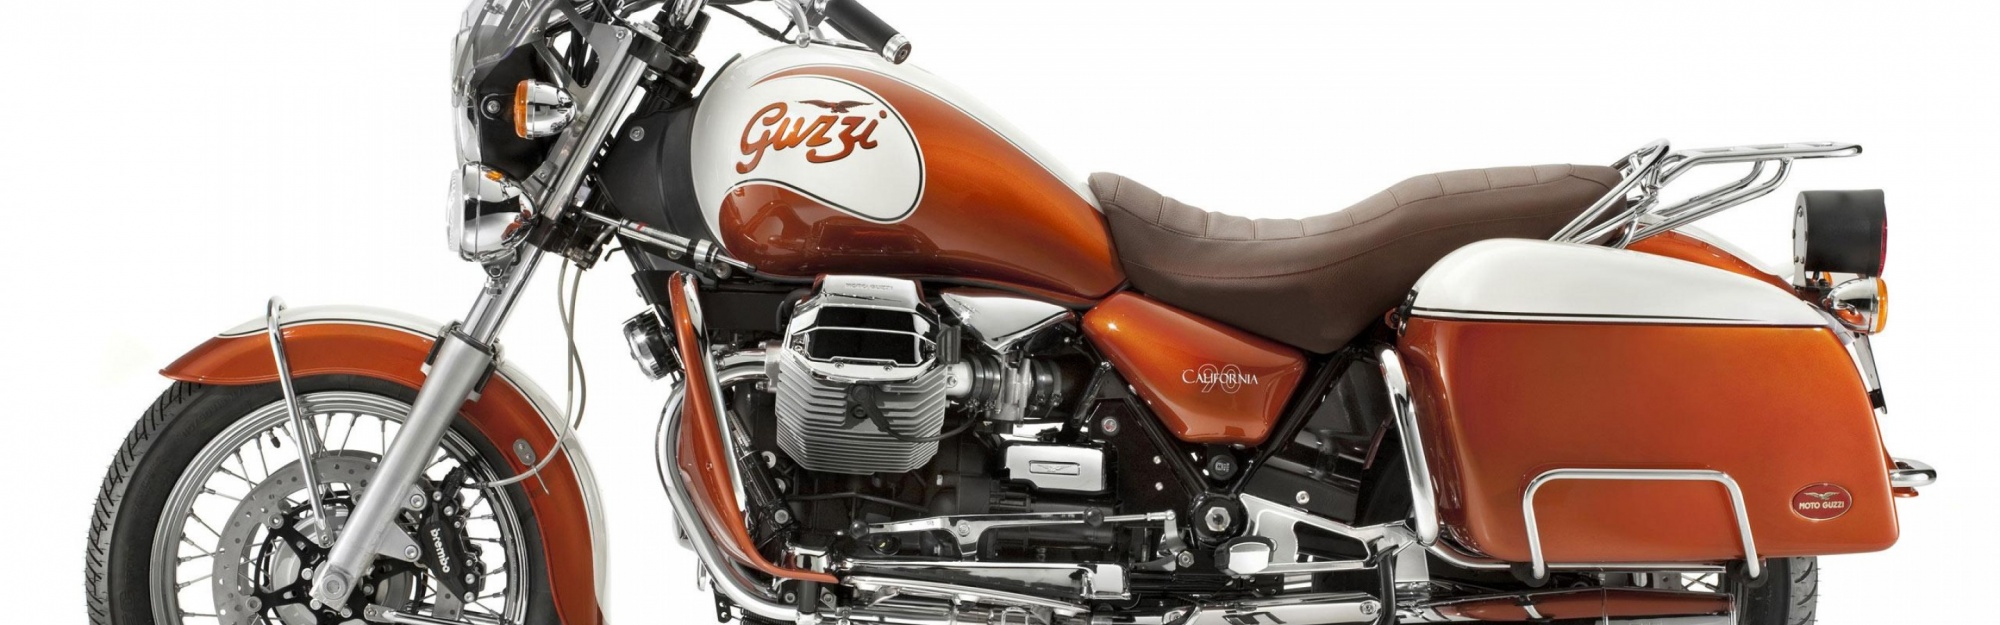 Moto Guzzi Motorcycle 2012